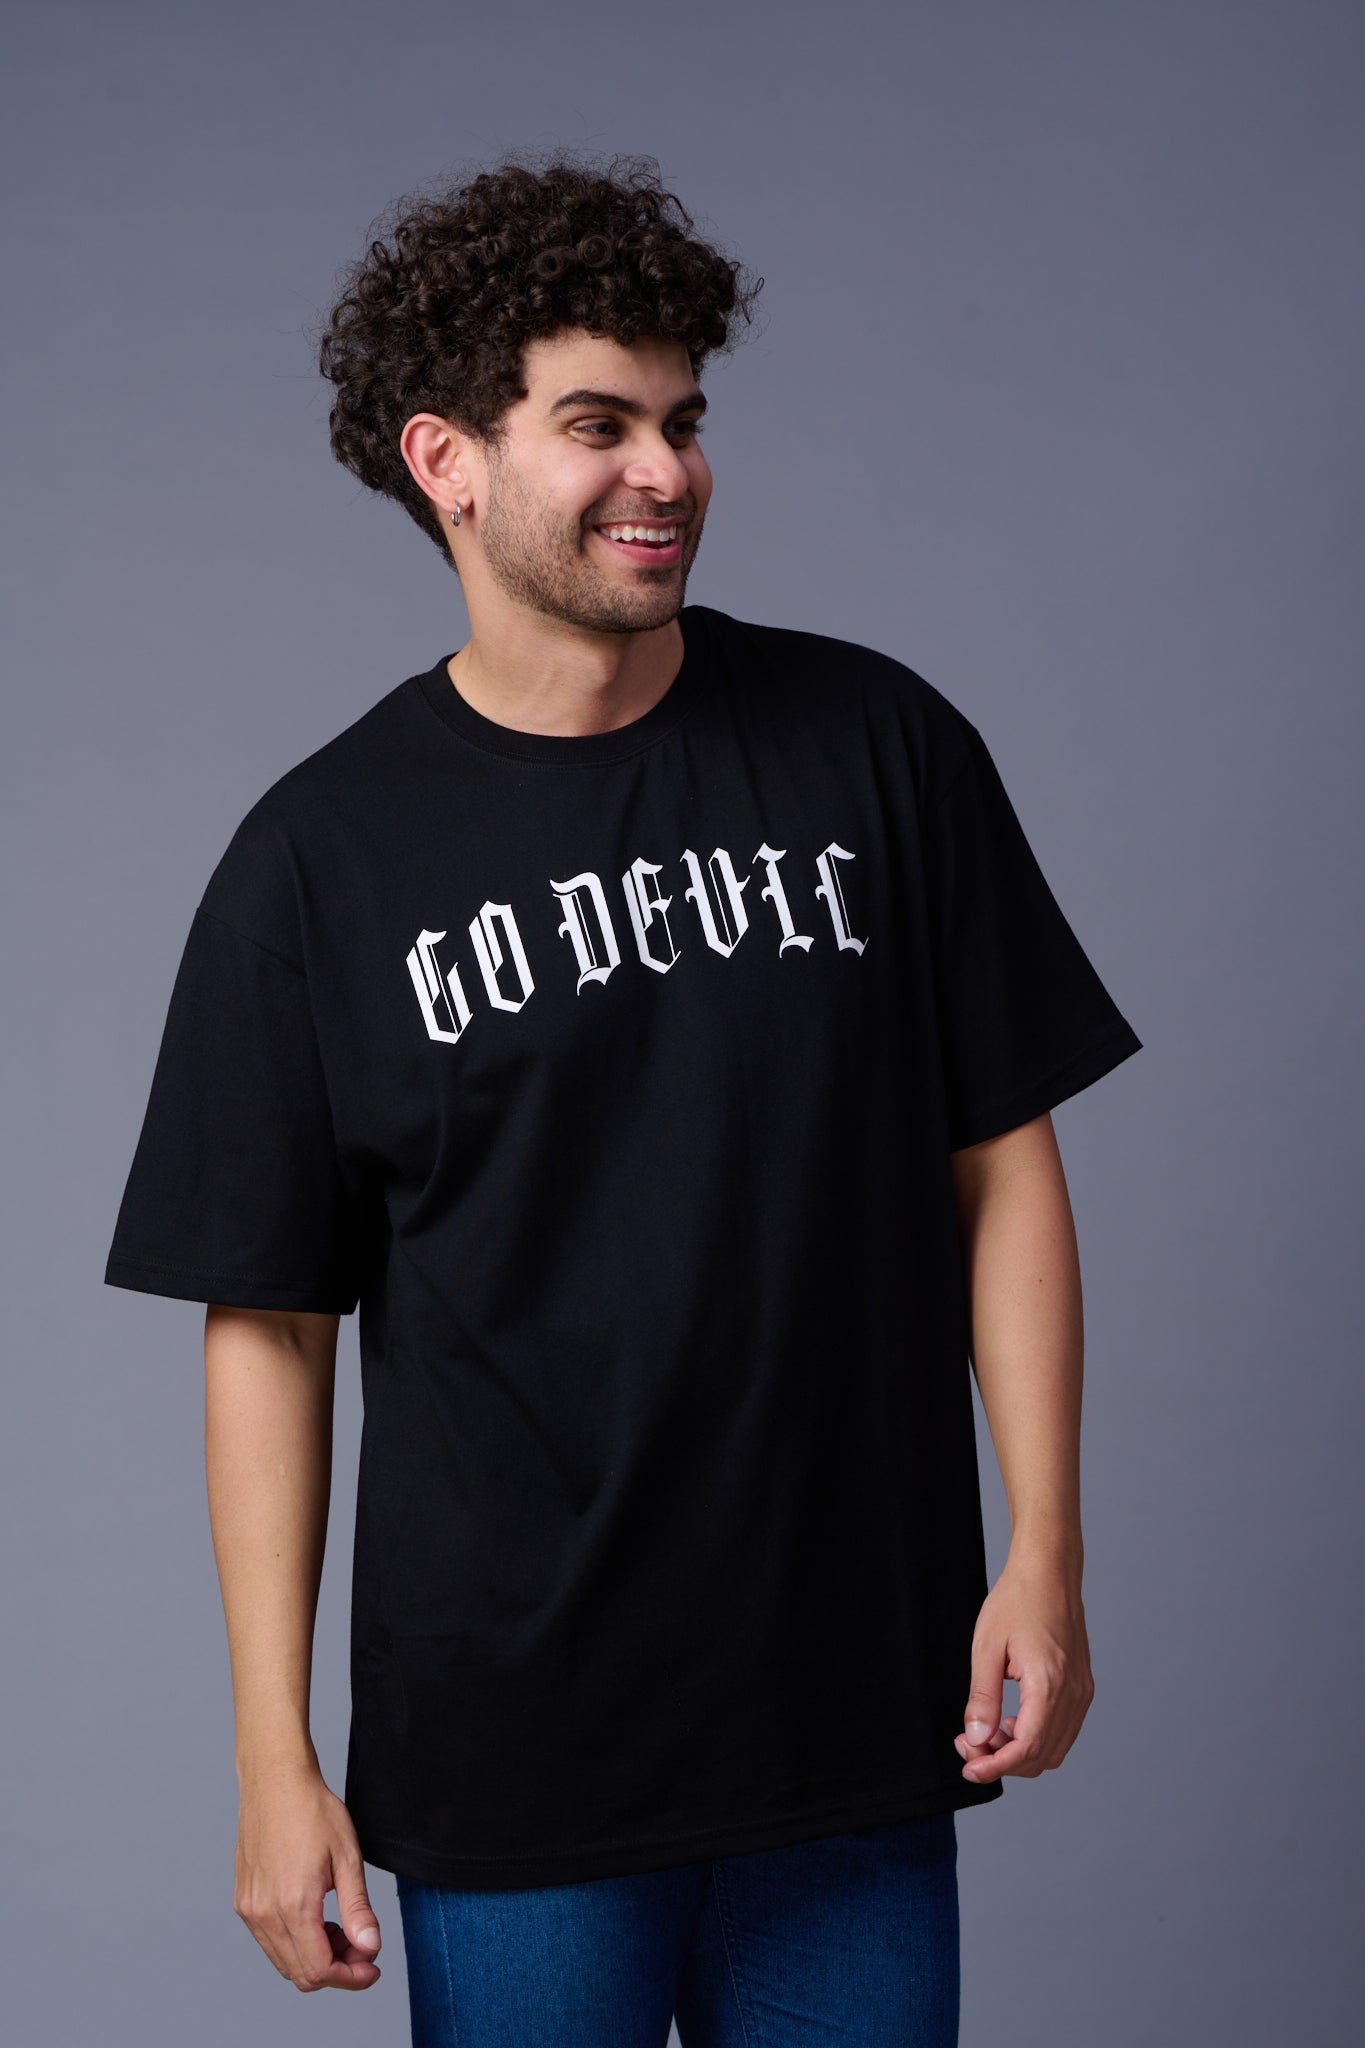 Go Devil Back Dice Printed Black Oversized T-Shirt for Men